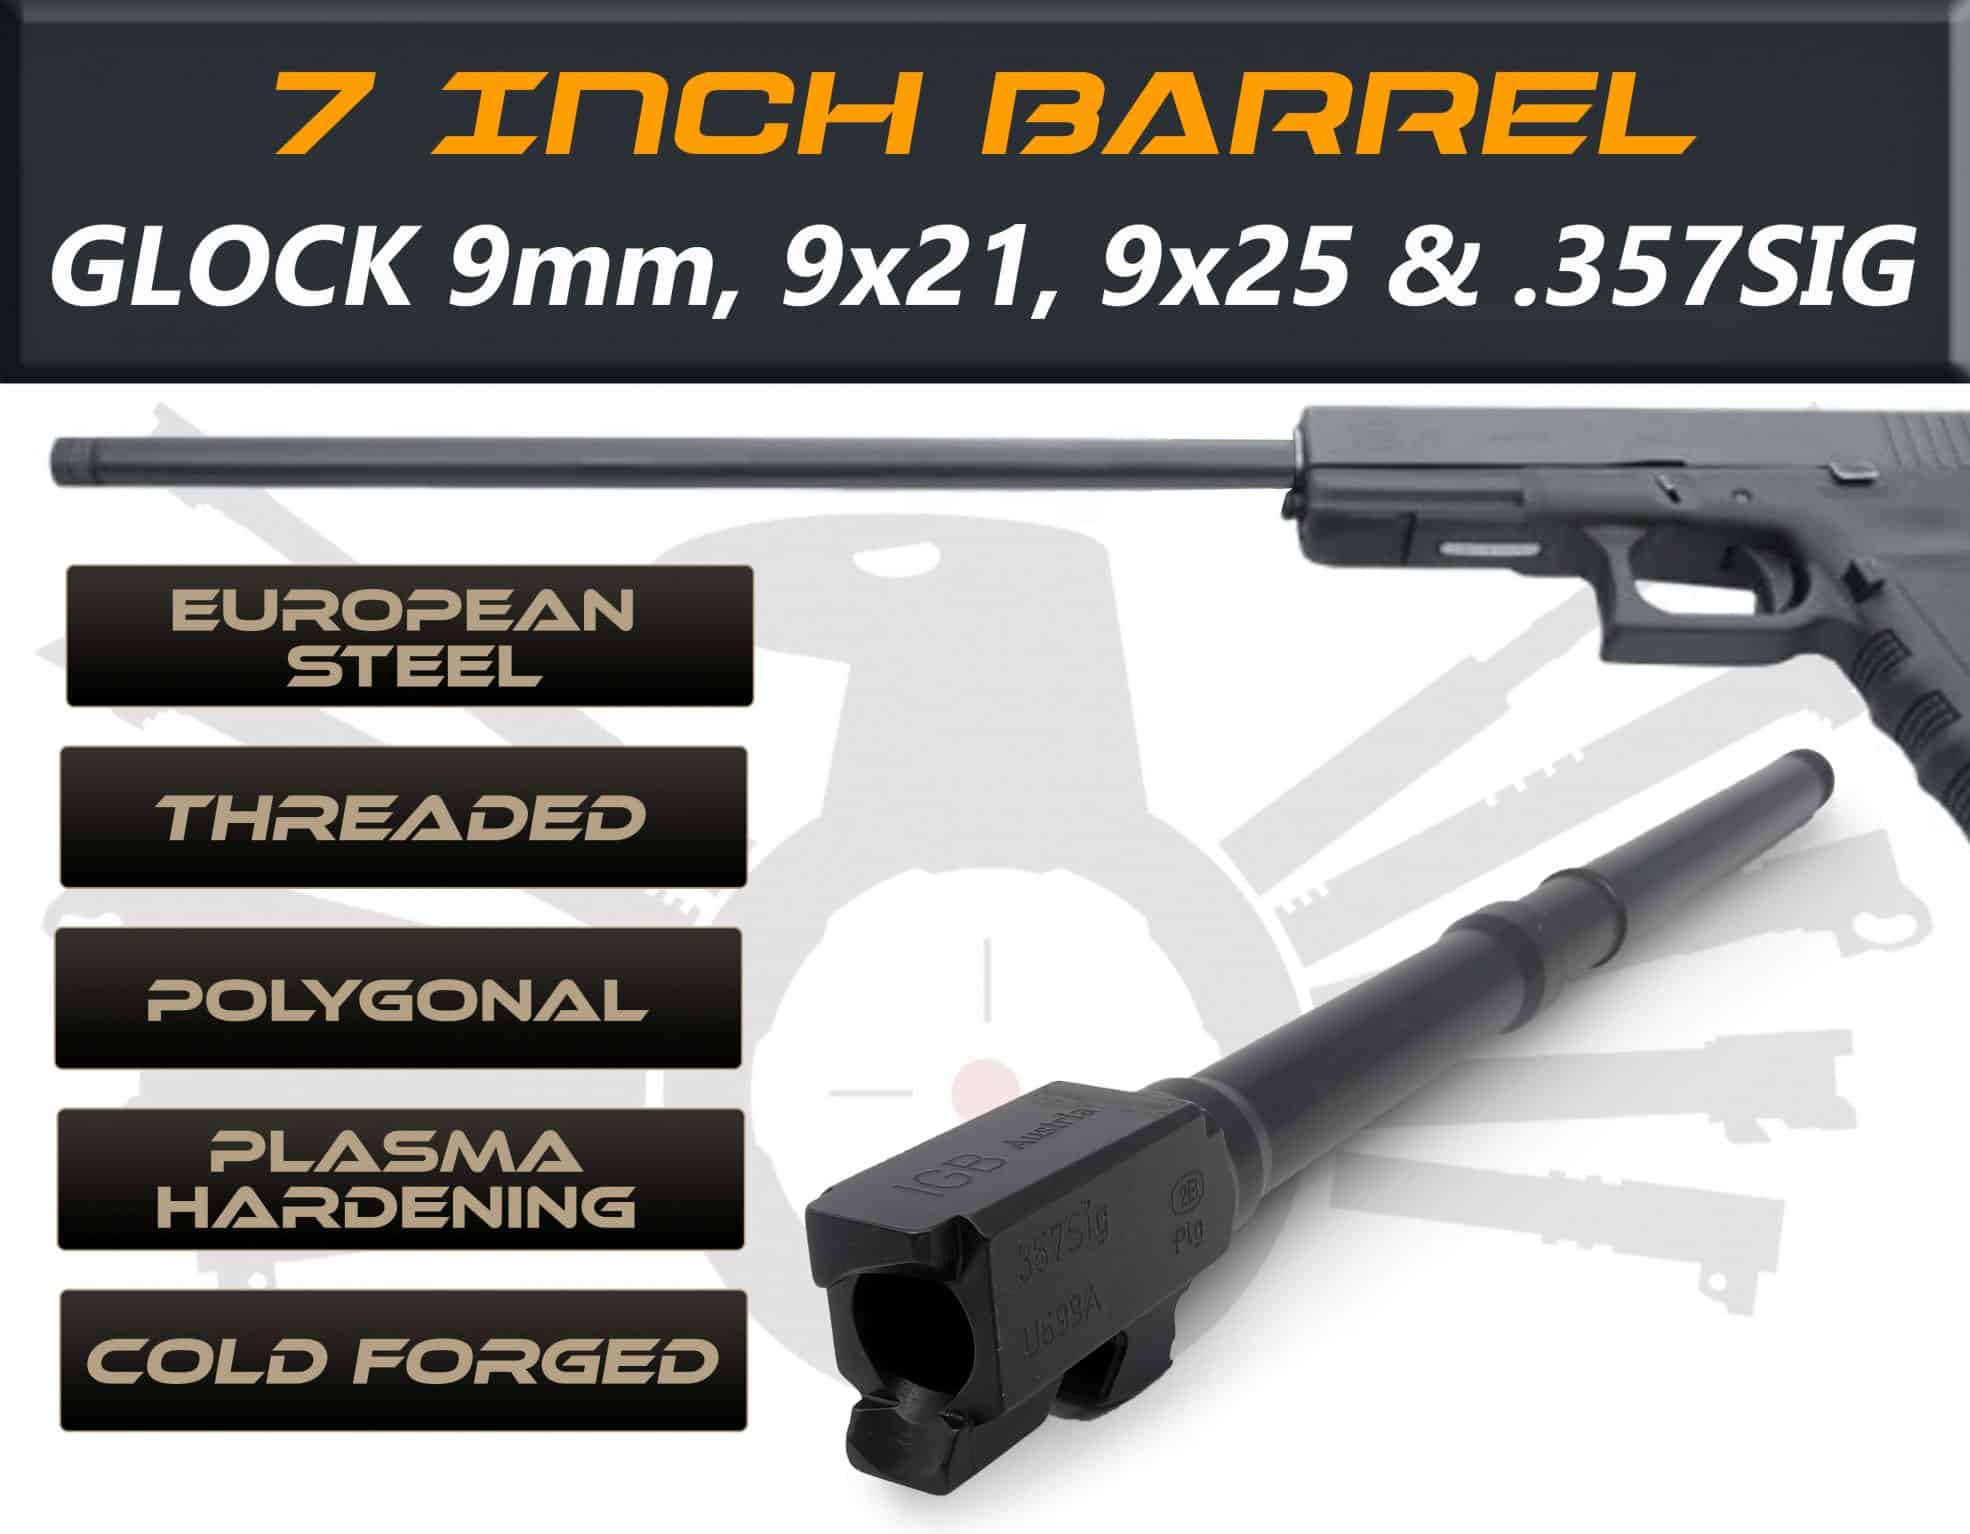 Glock Gen 5 Barrels 7.5